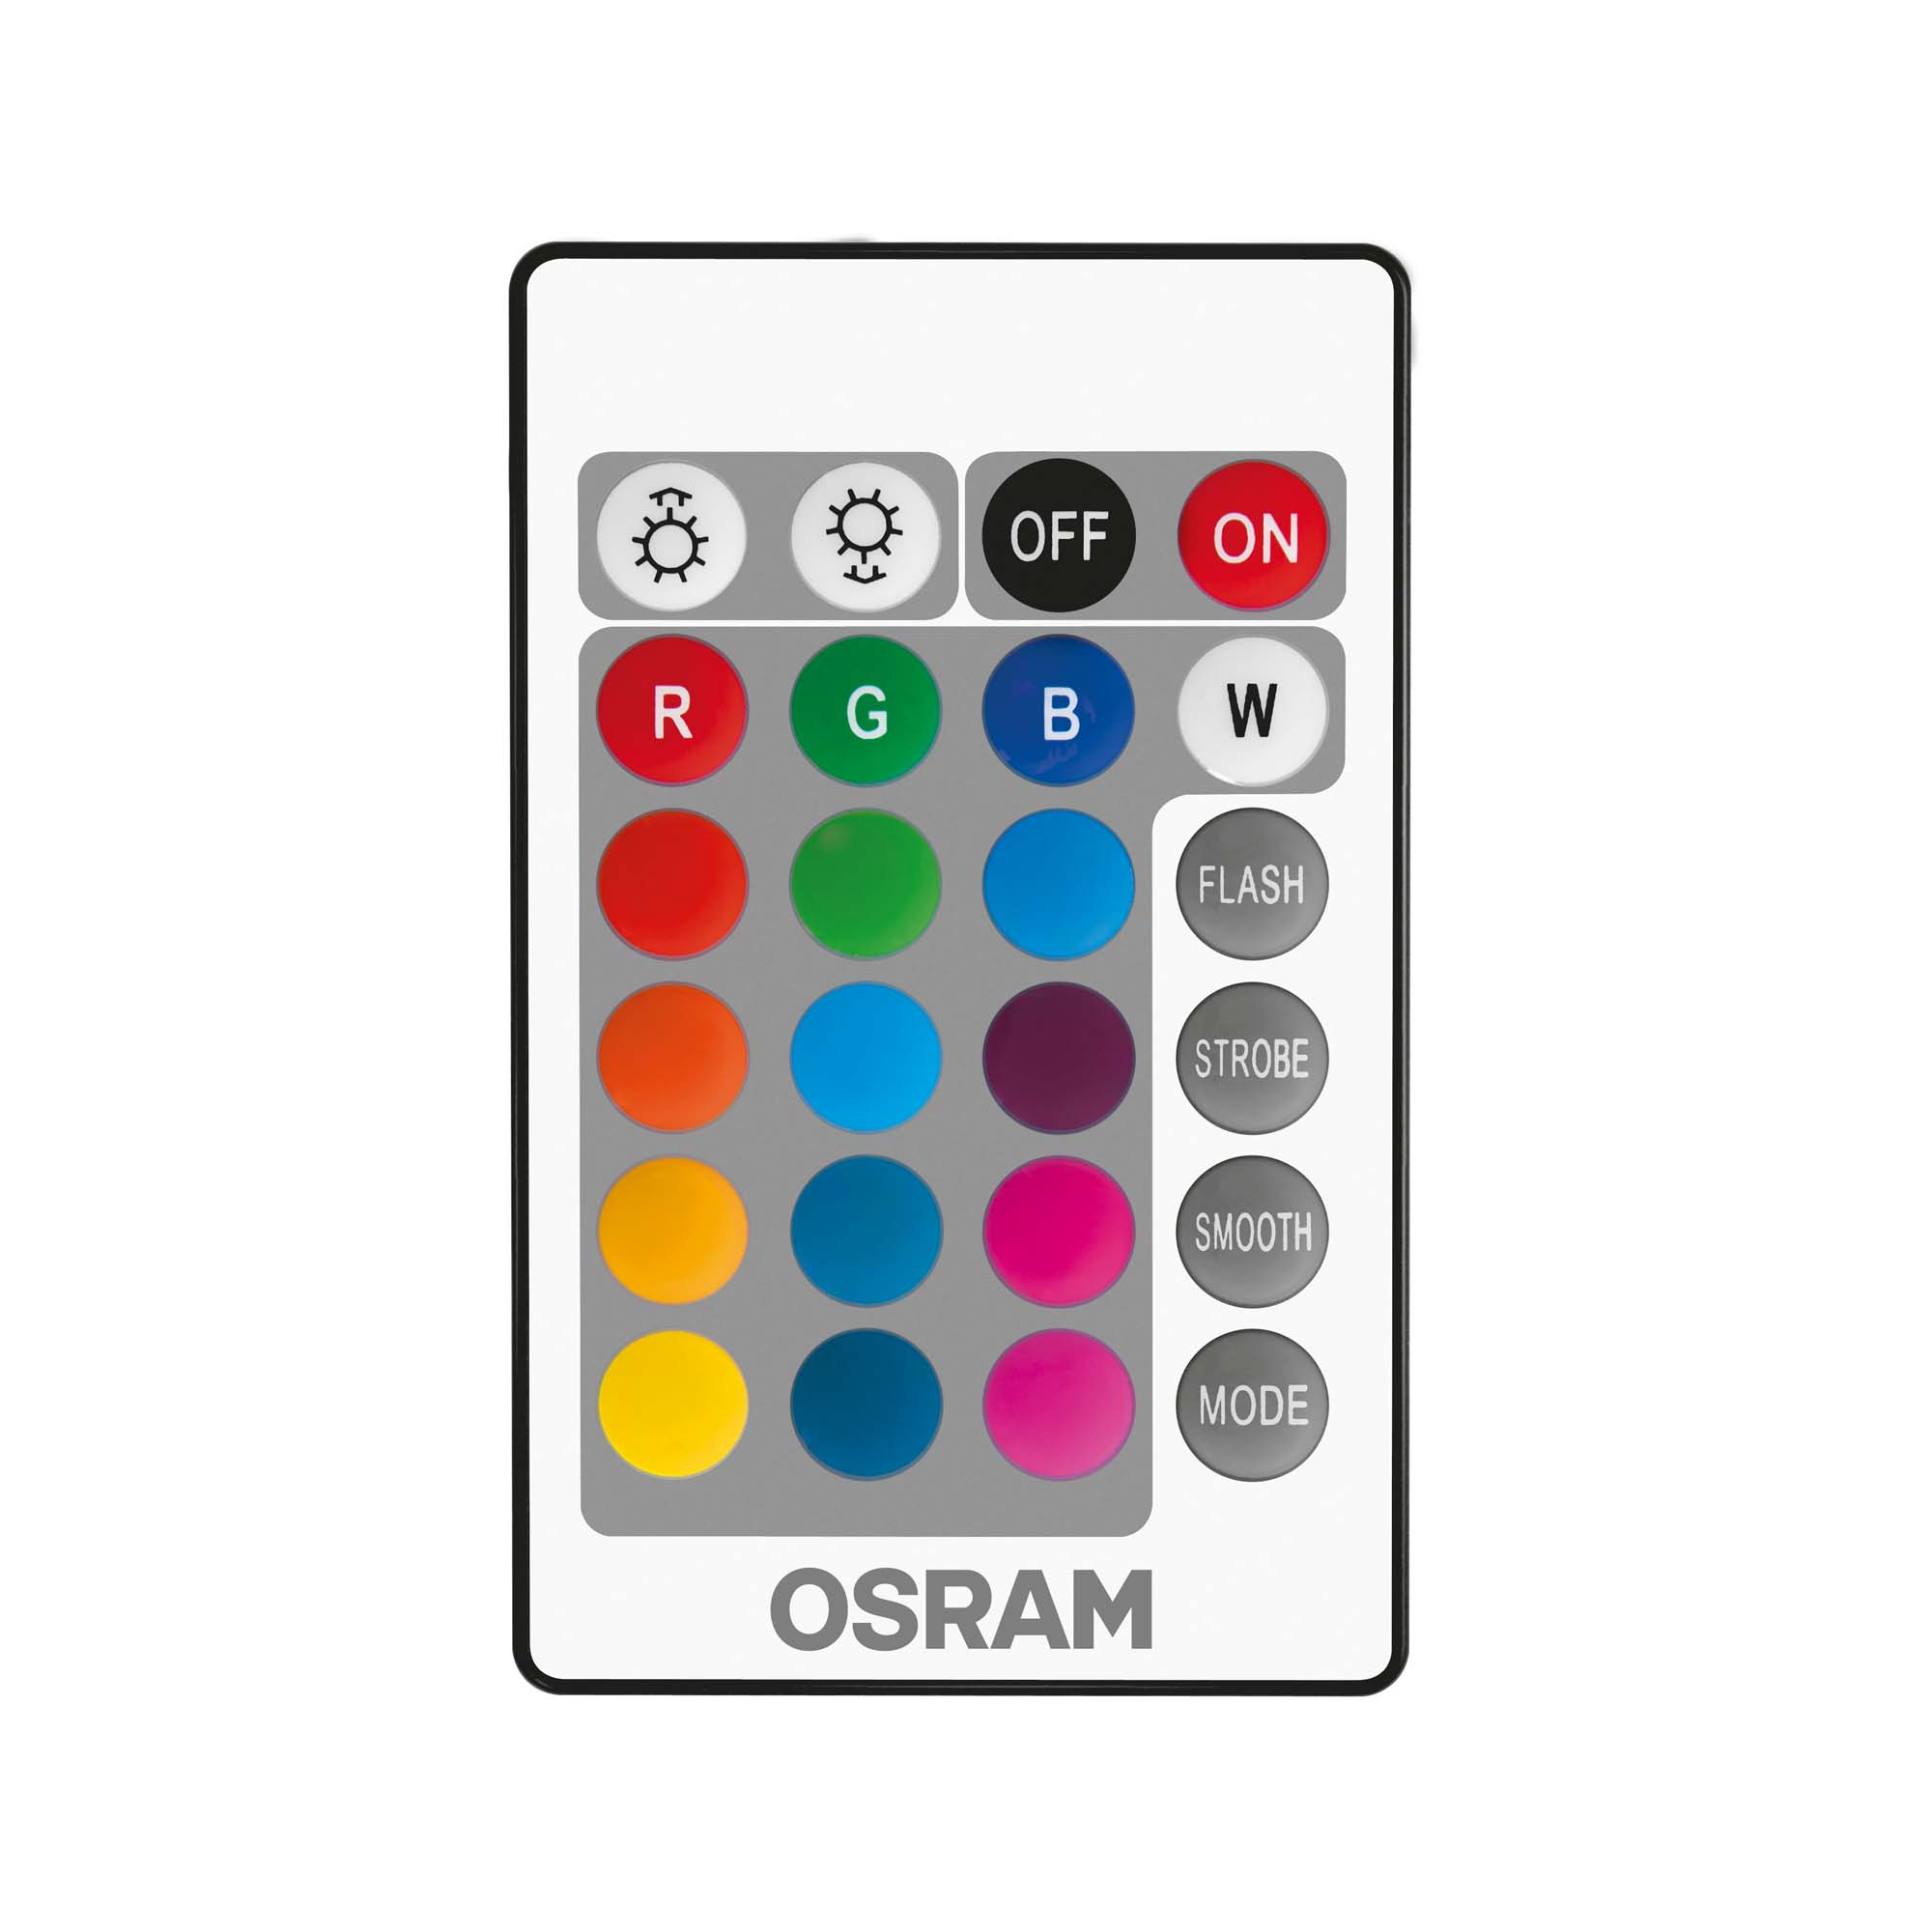 Bec Osram LED STAR+ CL B RGBW E14 25 4,5W telecomandă 827 250lm